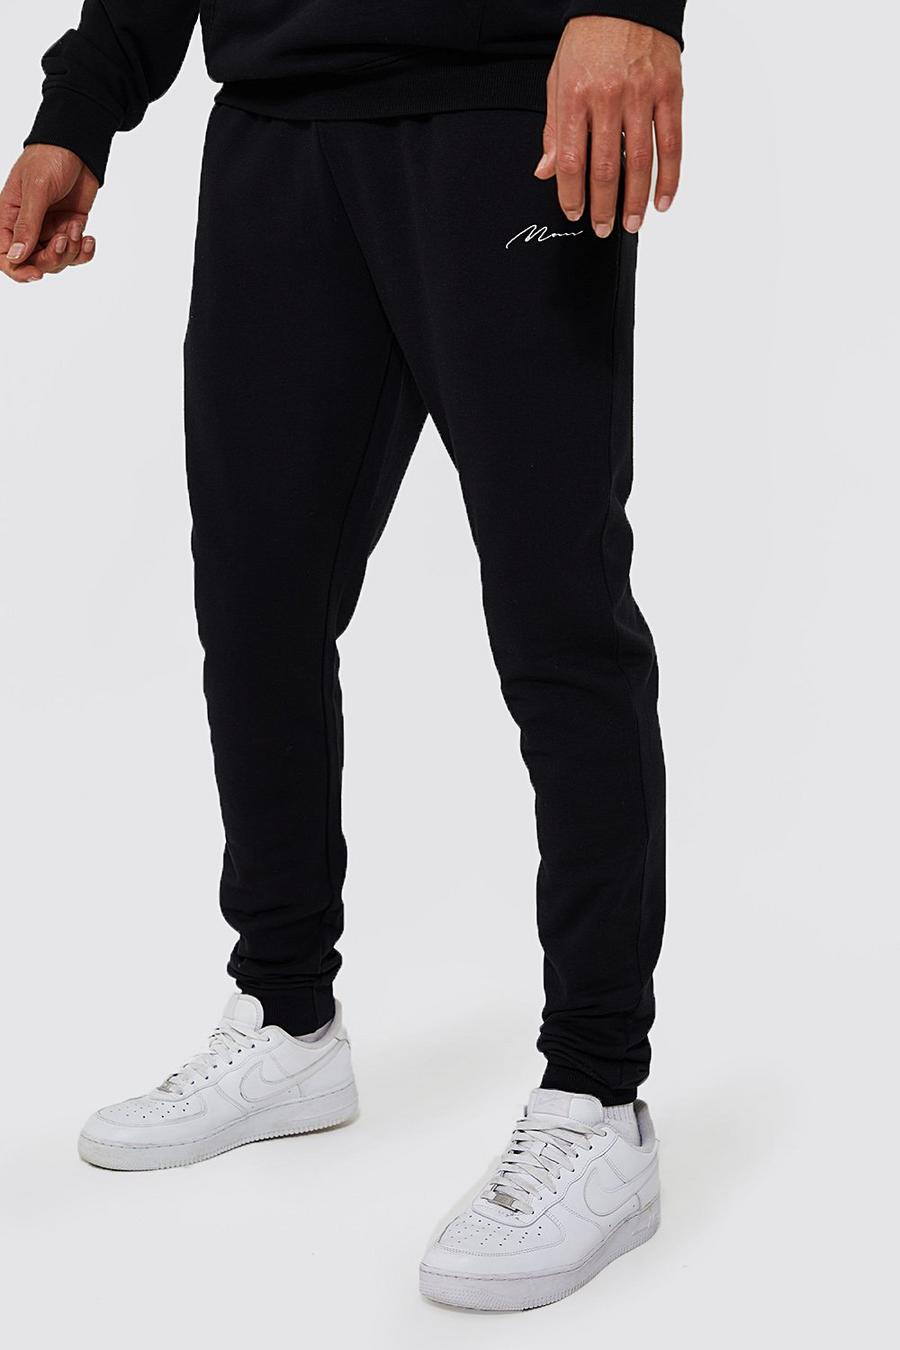 שחור negro מכנסי ריצה סקיני מבד משולב בכותנת REEL עם כיתוב Man, לגברים גבוהים image number 1